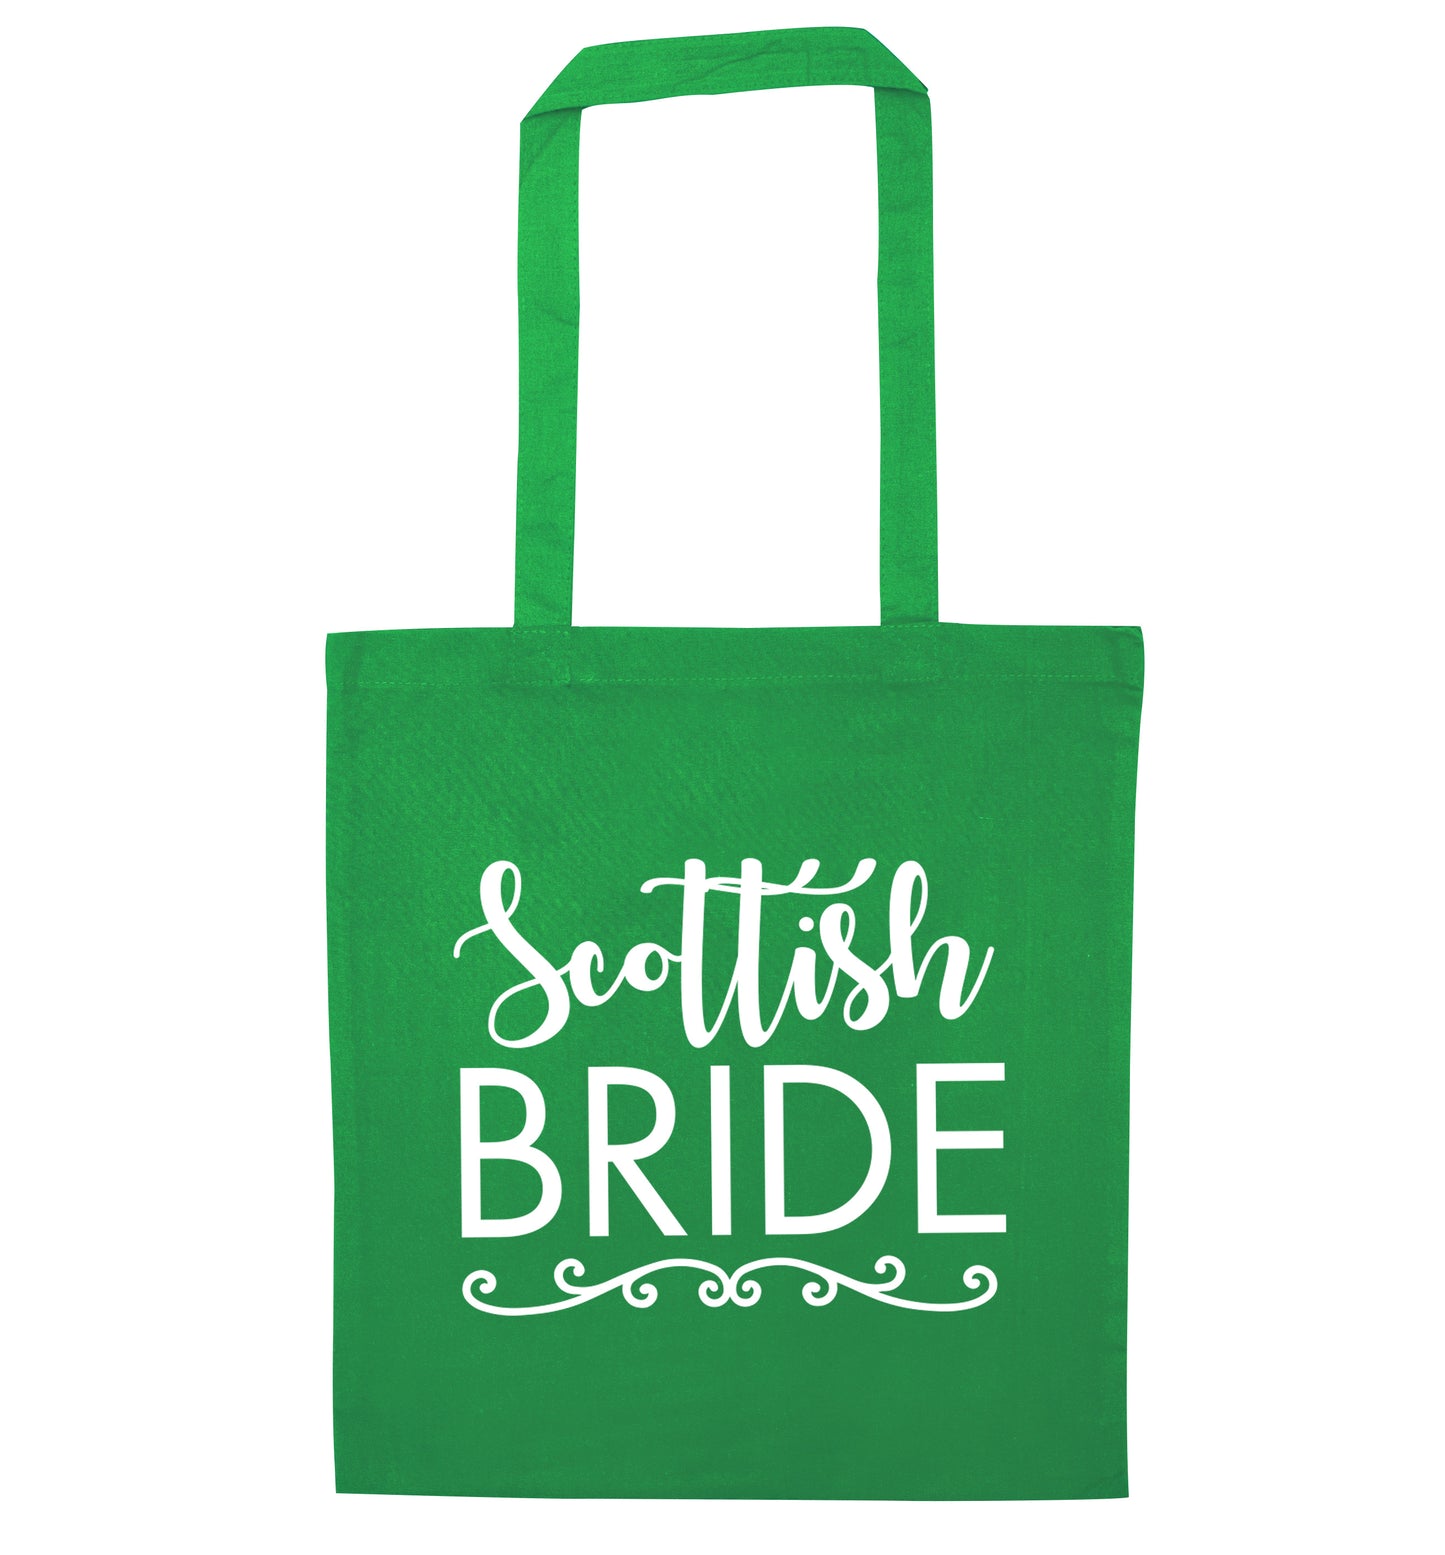 Scottish Bride green tote bag